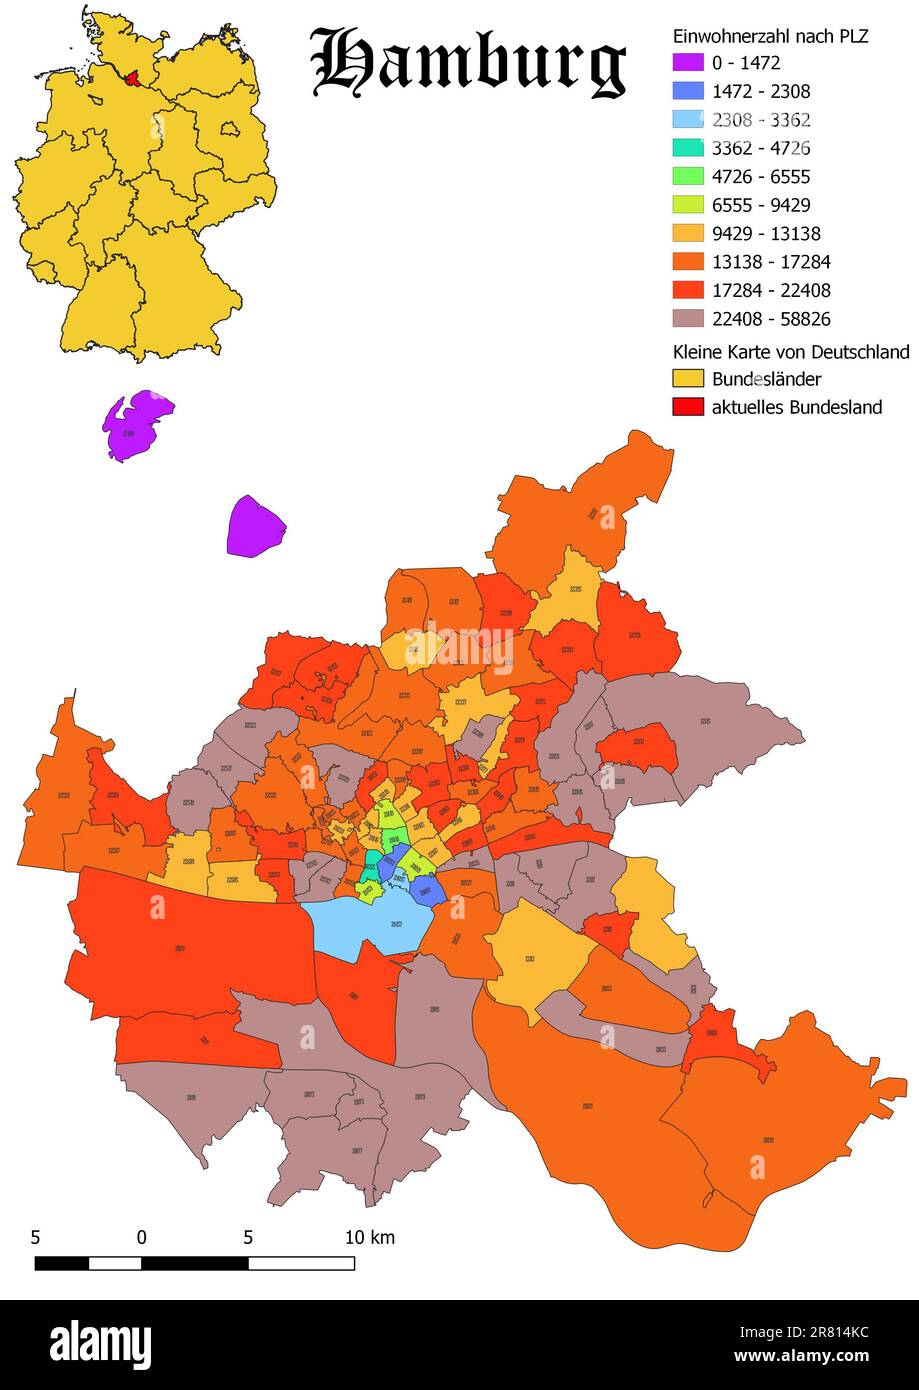 Bundesland Hamburg-Bevölkerung nach Postleitzahlenkarte mit deutscher Karte Stockfoto